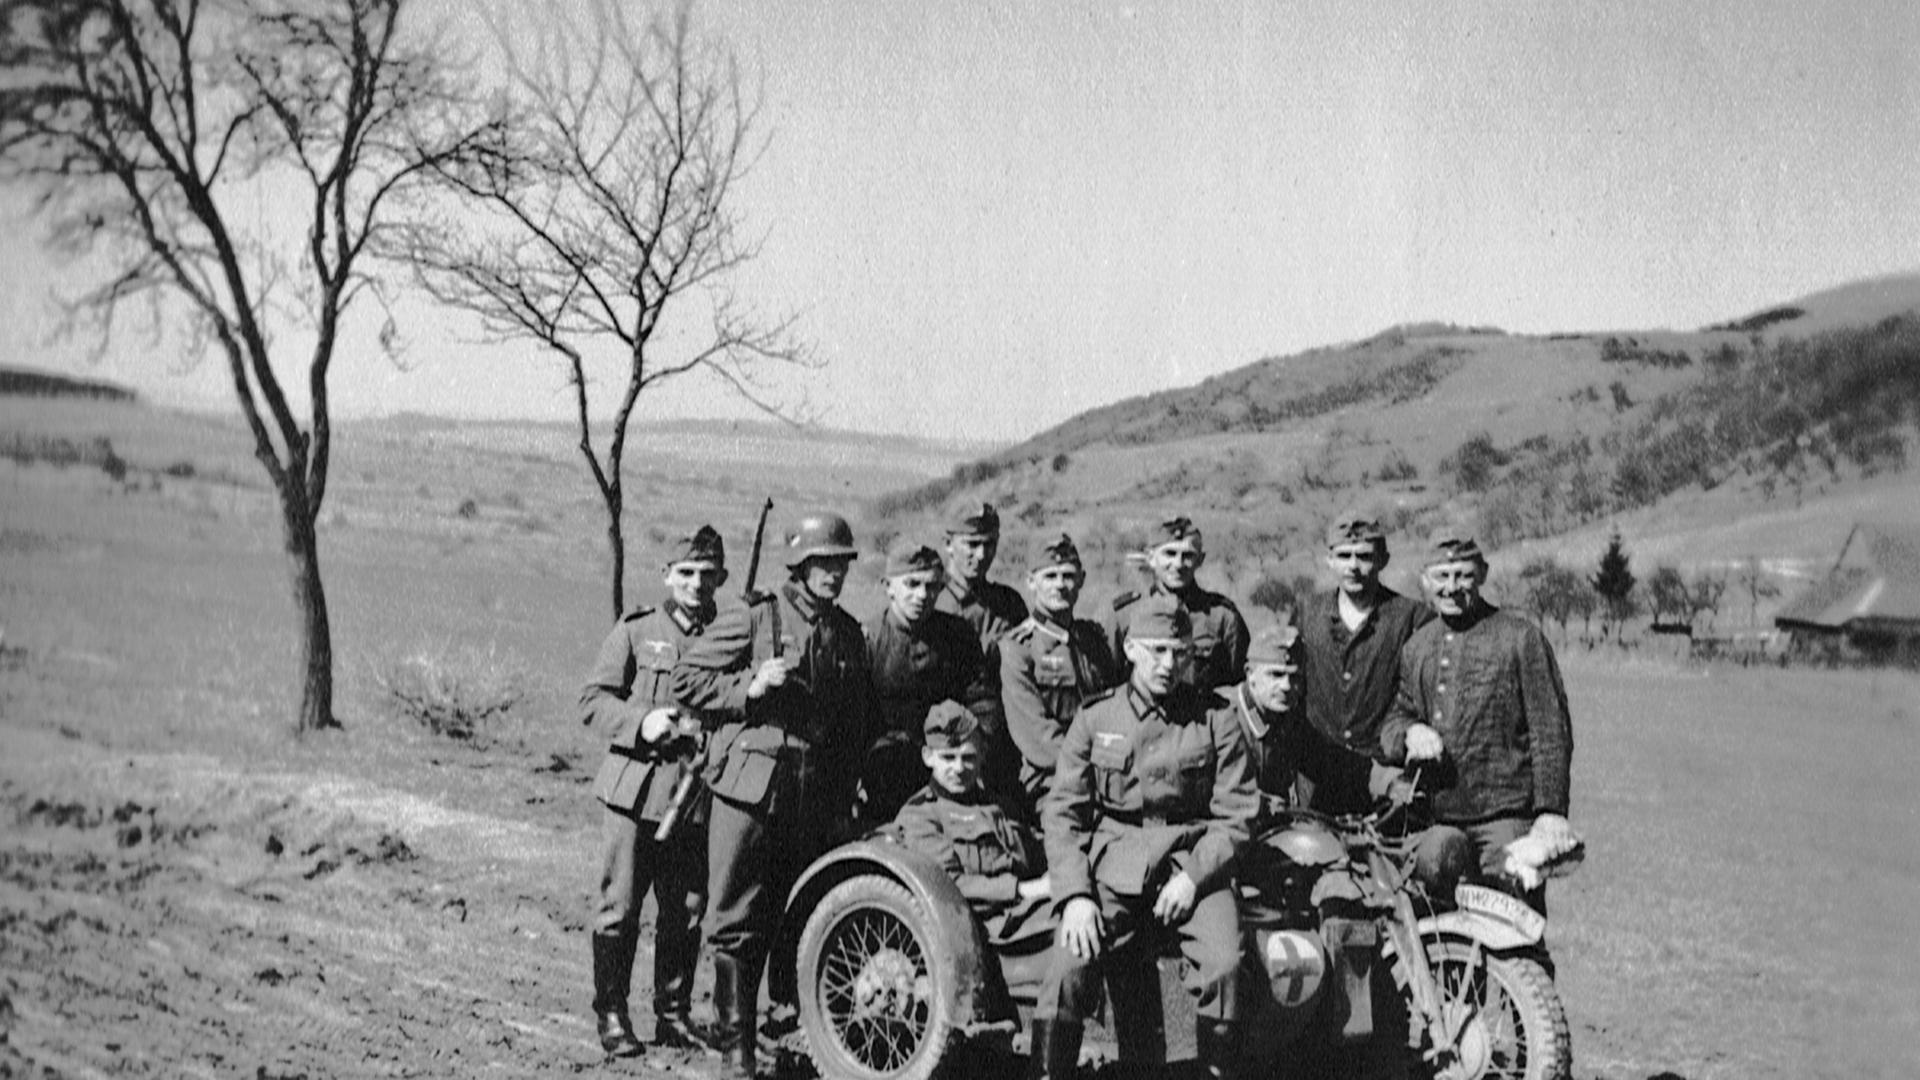 Kradfahrer und Soldaten haben sich zu einem Gruppenfoto in Frankreich aufgestellt - Herbst 1940.